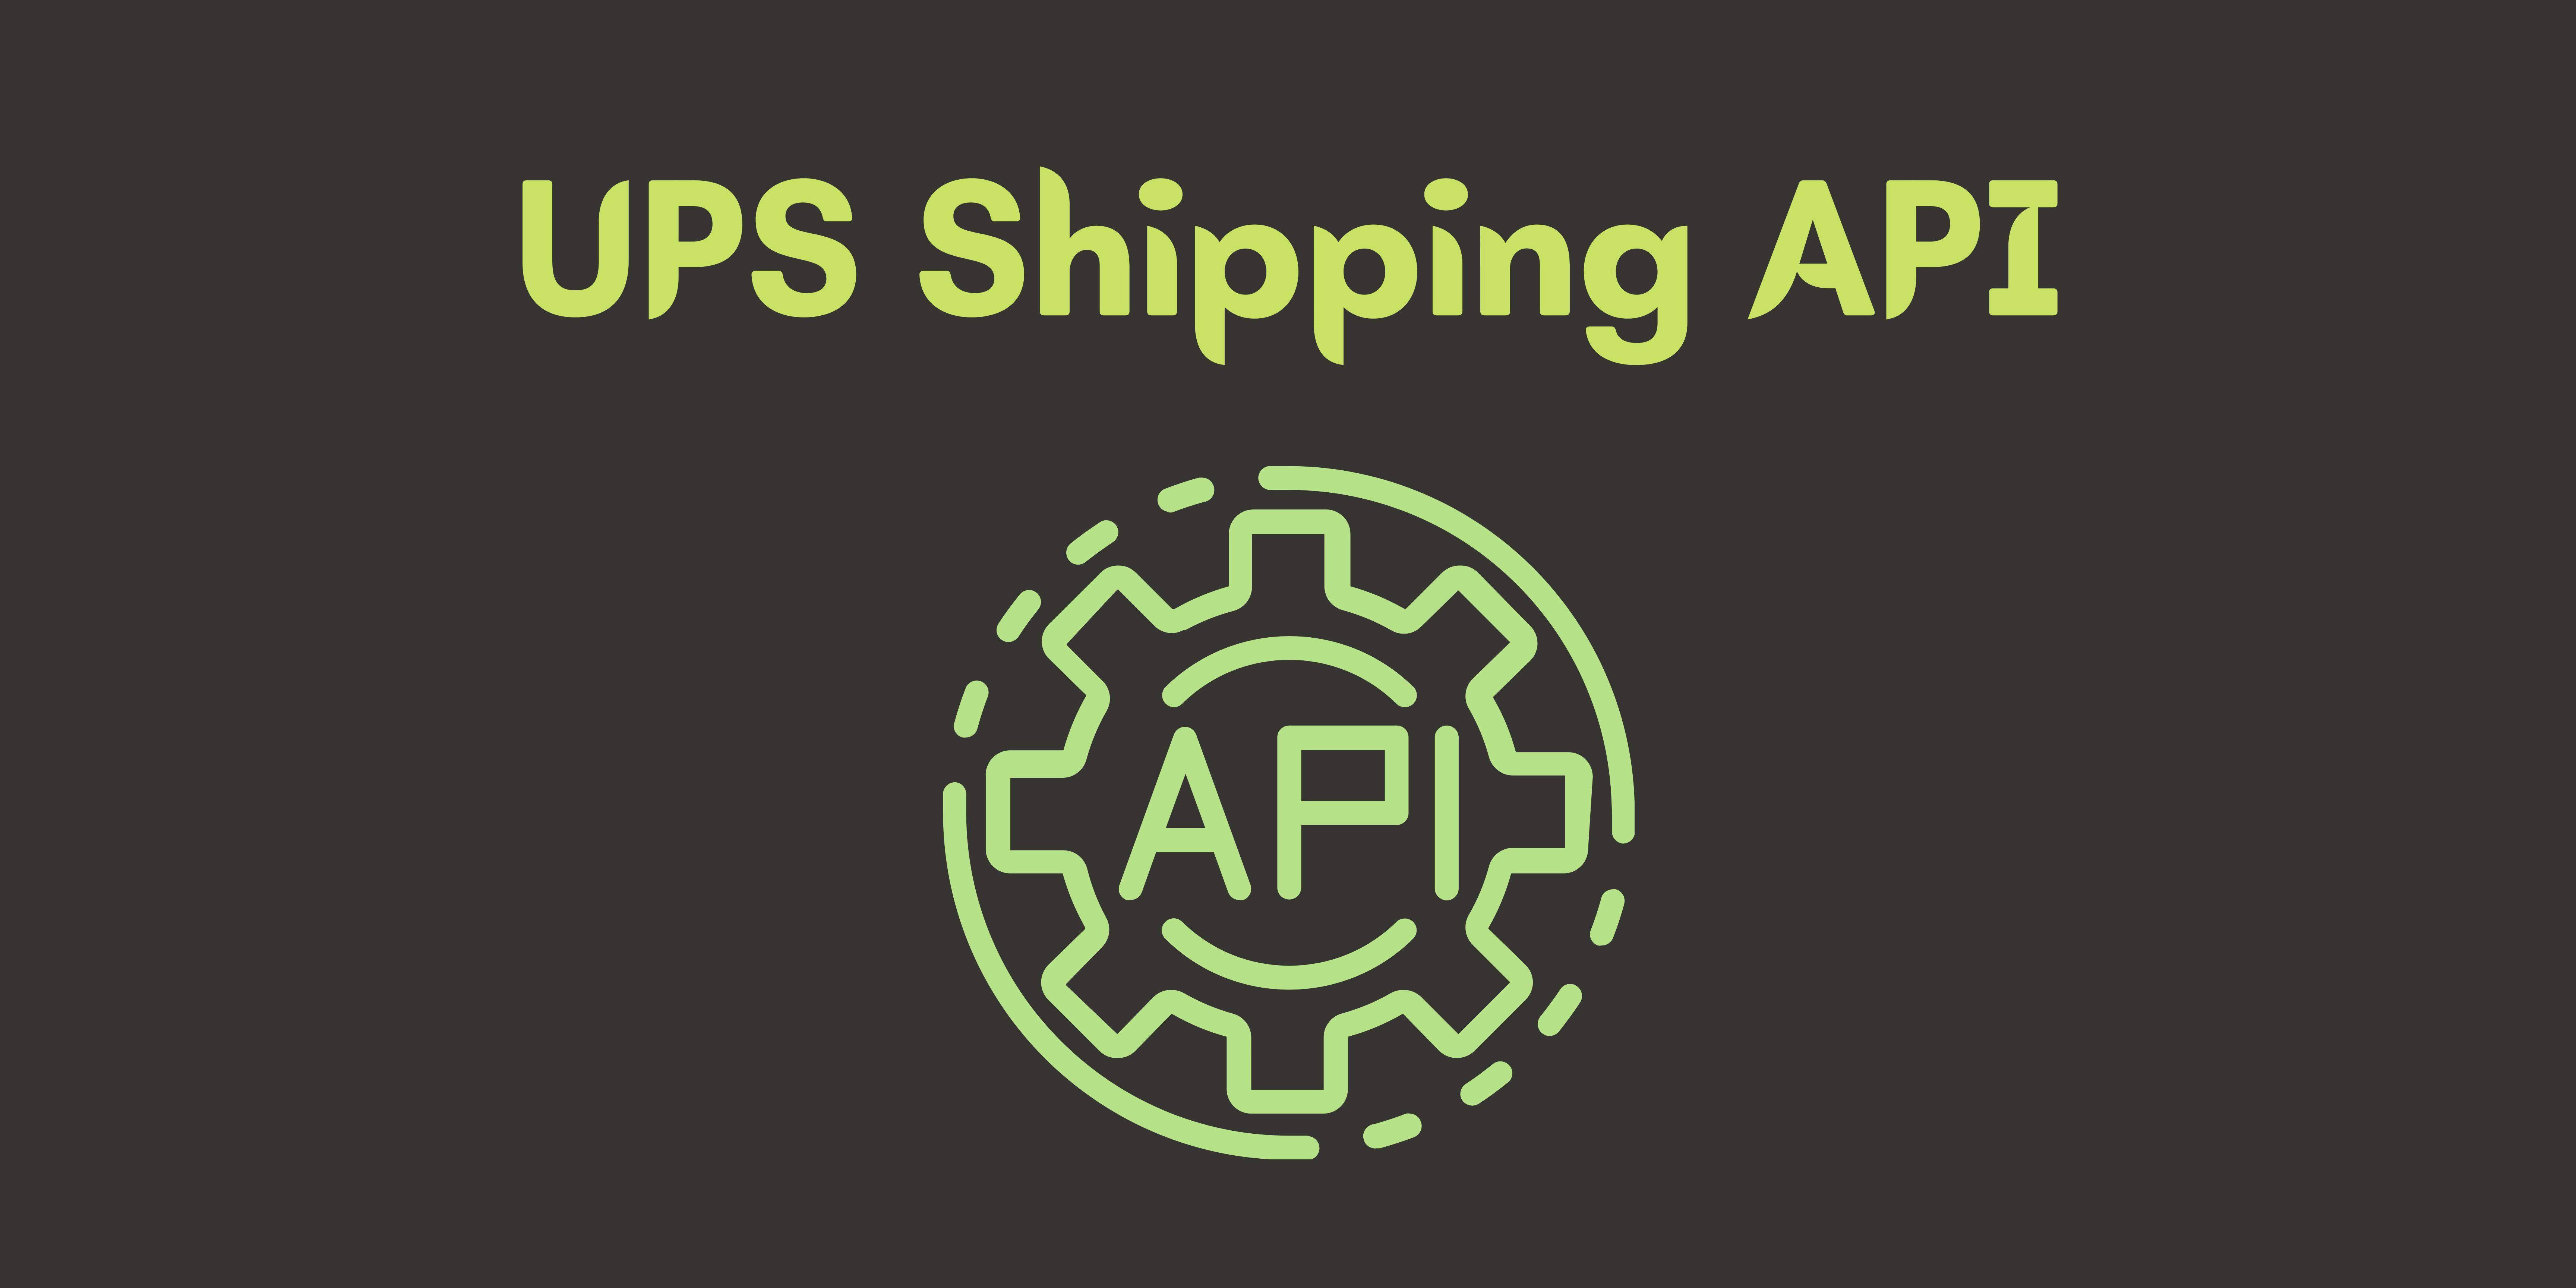 UPS Shipping API.jpg